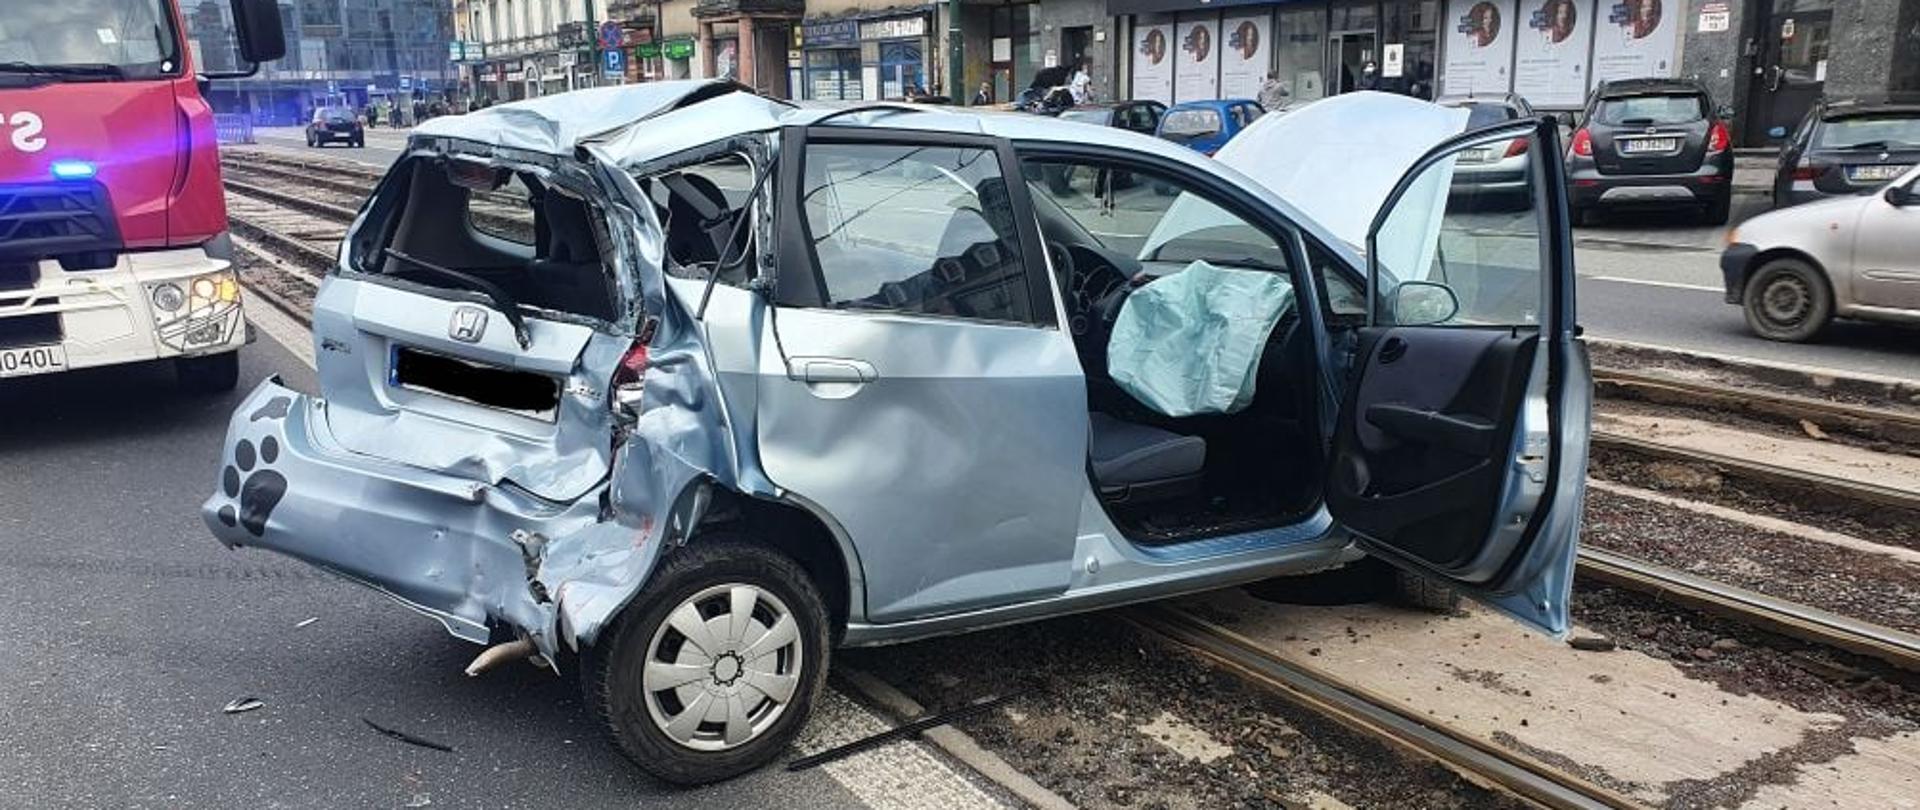 Zdjęcie przestawia uszkodzony samochód koloru srebrnego znajdujący się na torach tramwajowych , w tle samochód straży pożarnej 